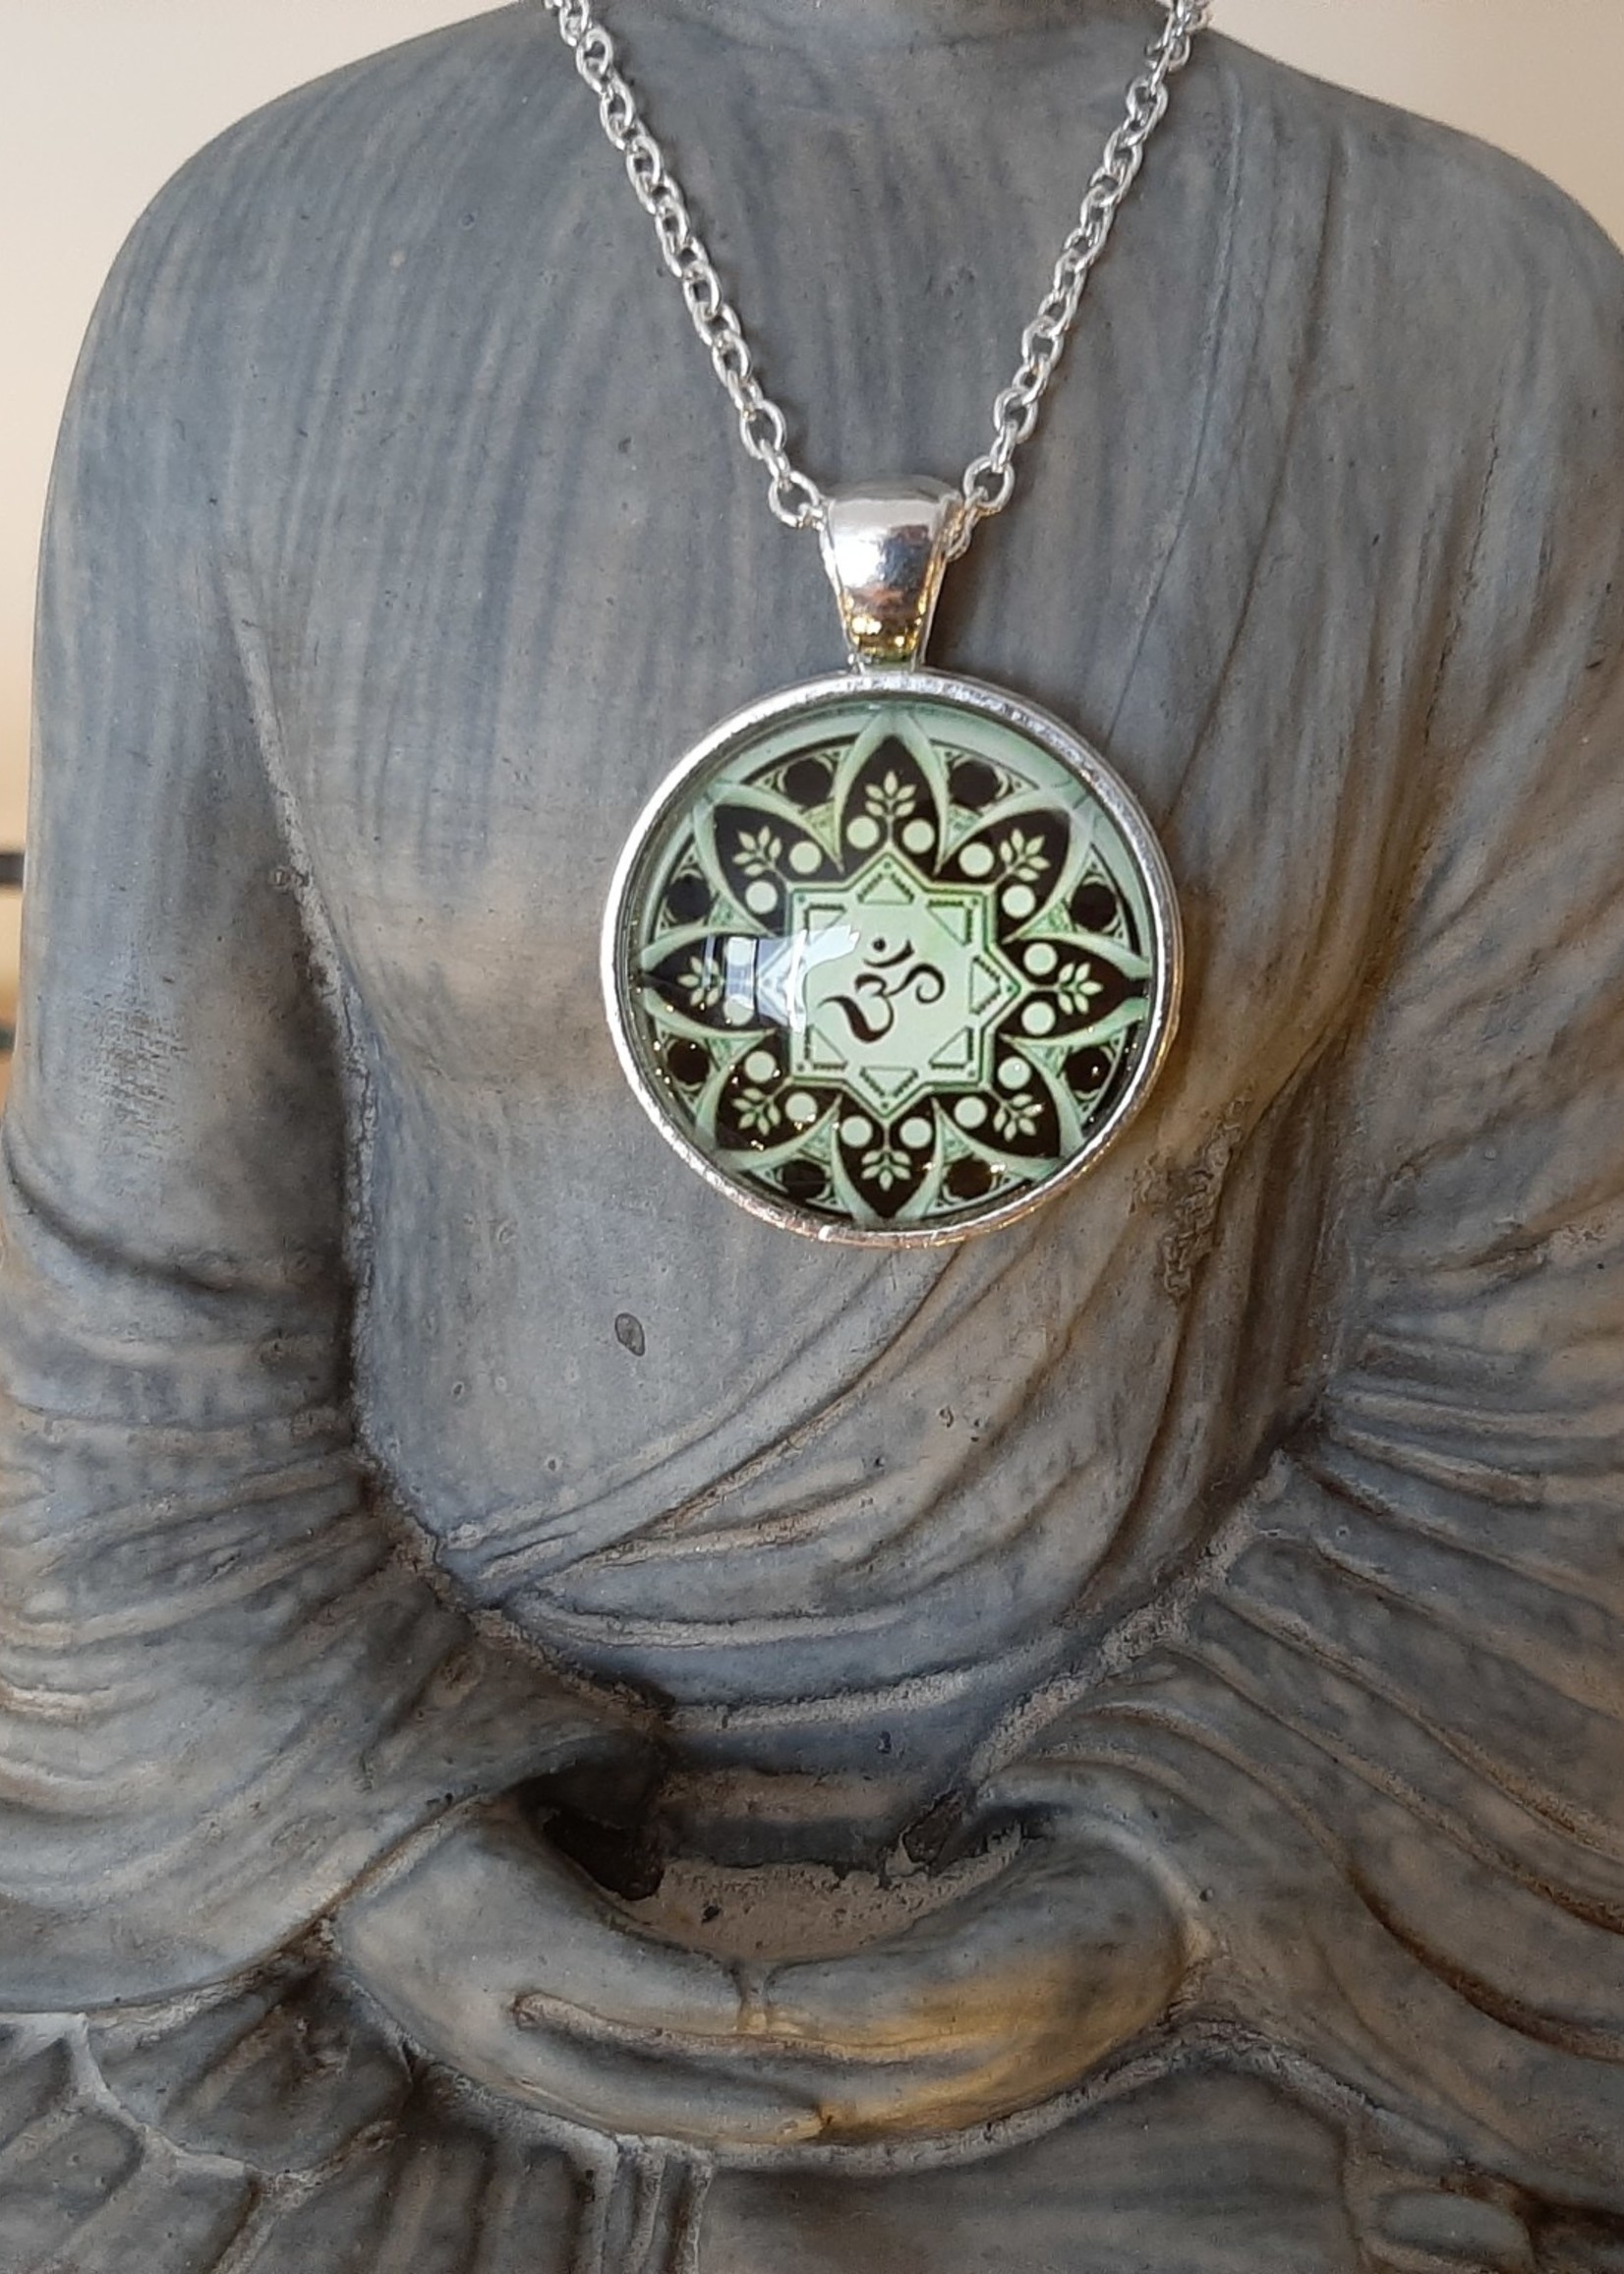 Necklace Ohm Mandala